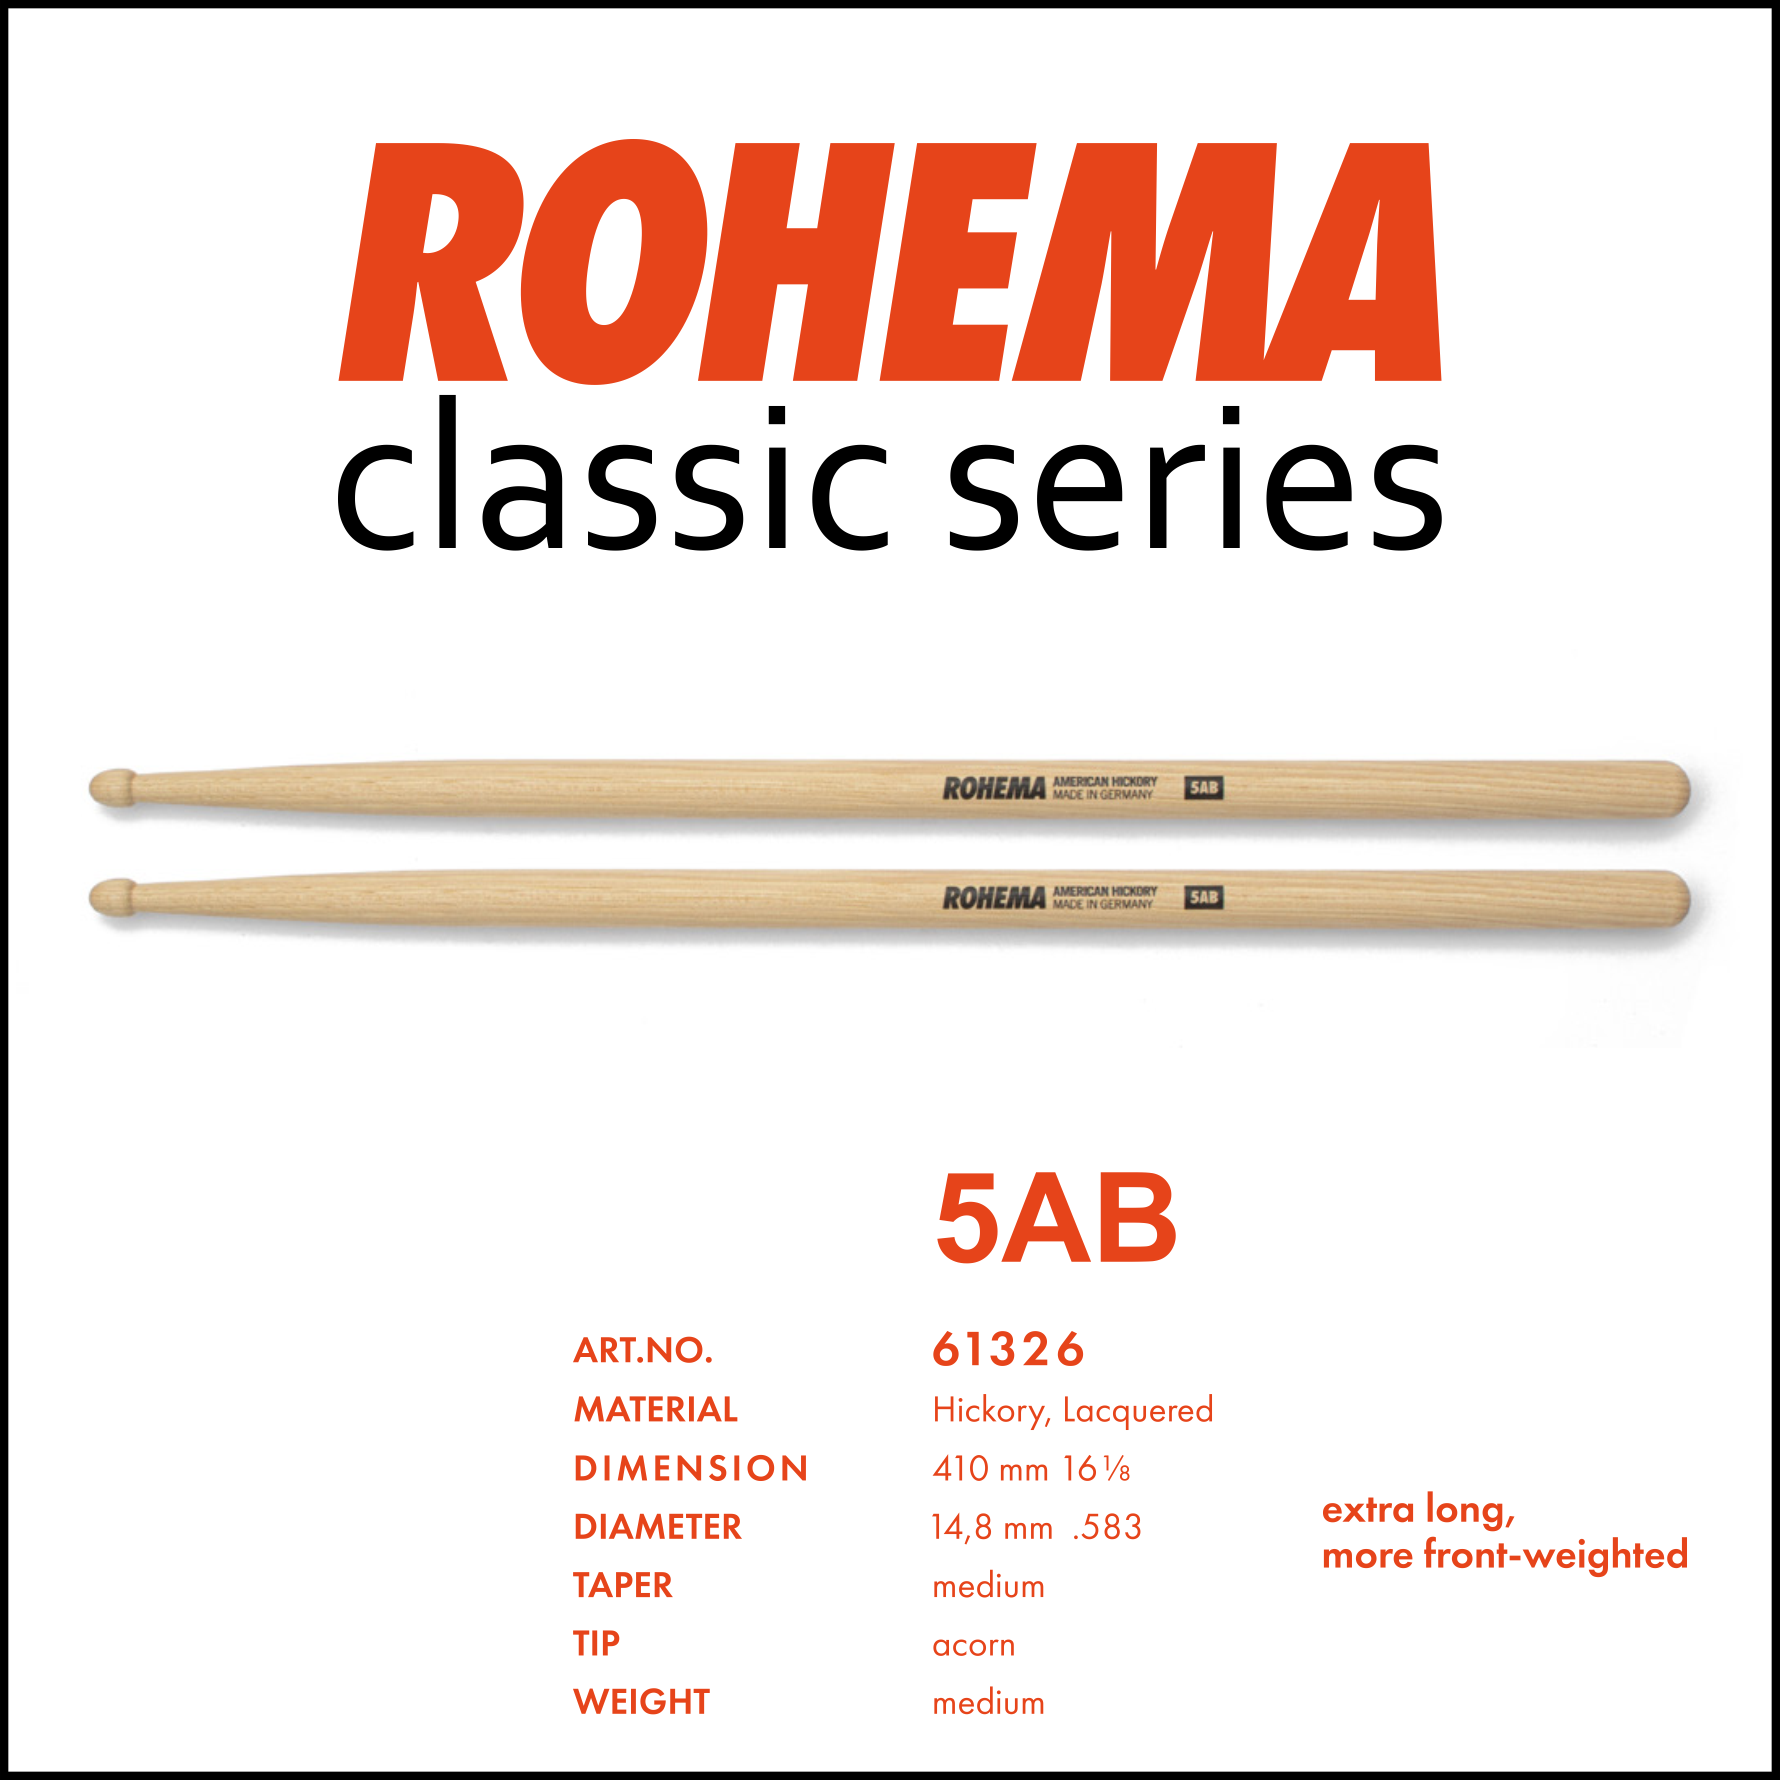 Rohema Classic Series 5AB: Professionele, stevige, duurzame en vriendelijke geprijsde drumstokken.